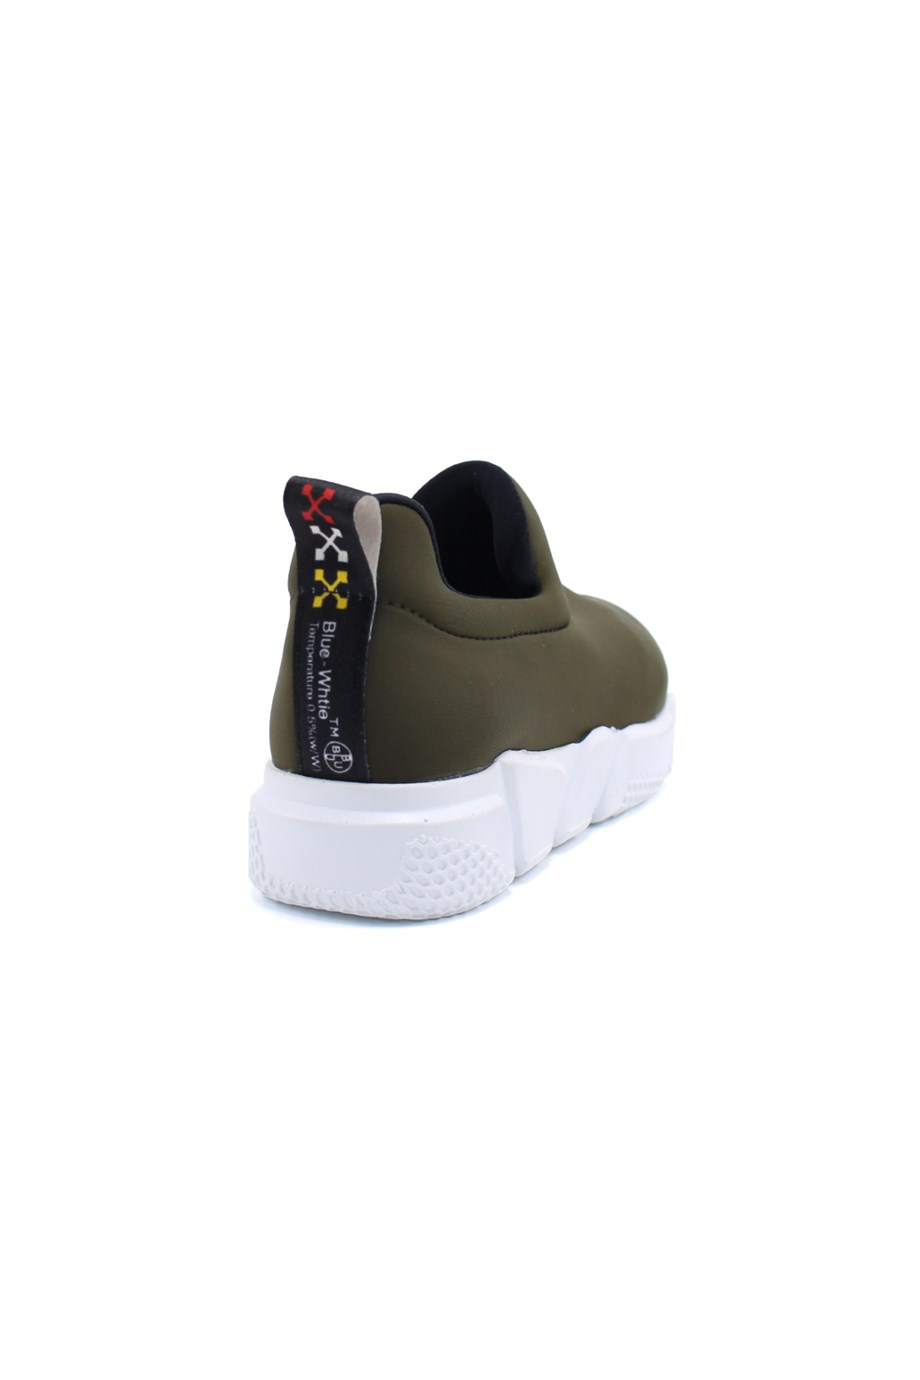 Bestello Bağcıksız Sneaker YESIL 101-14616-02 Kadın Ayakkabı